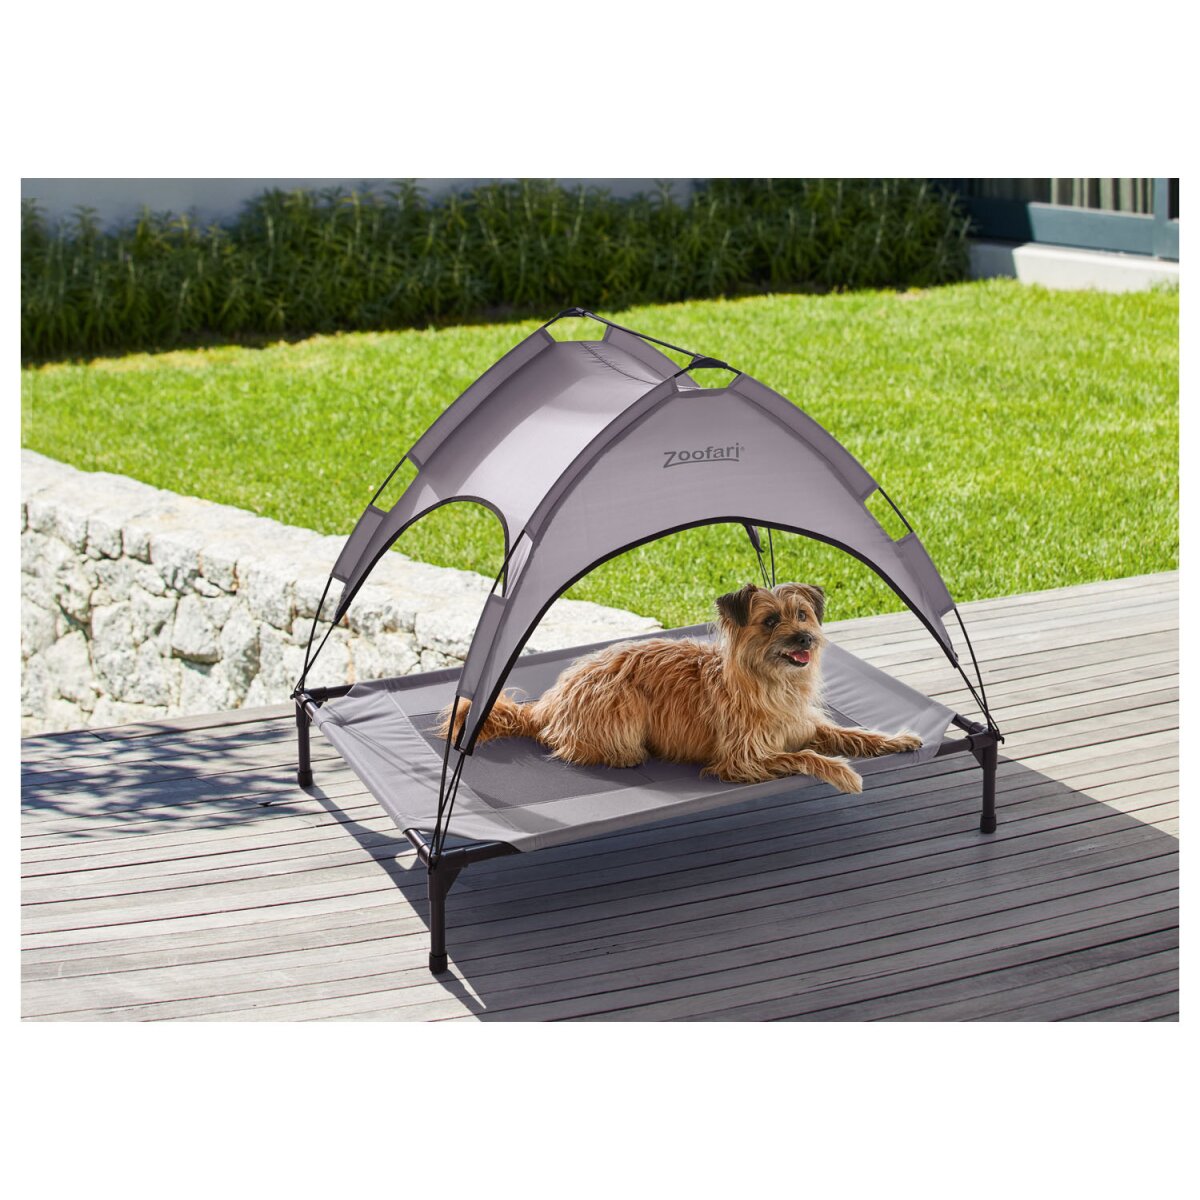 zoofari® Hundebett mit Sonnendach, B 106 x H 85 x T 75 cm, grau - B-Ware  sehr gut, 25,99 €